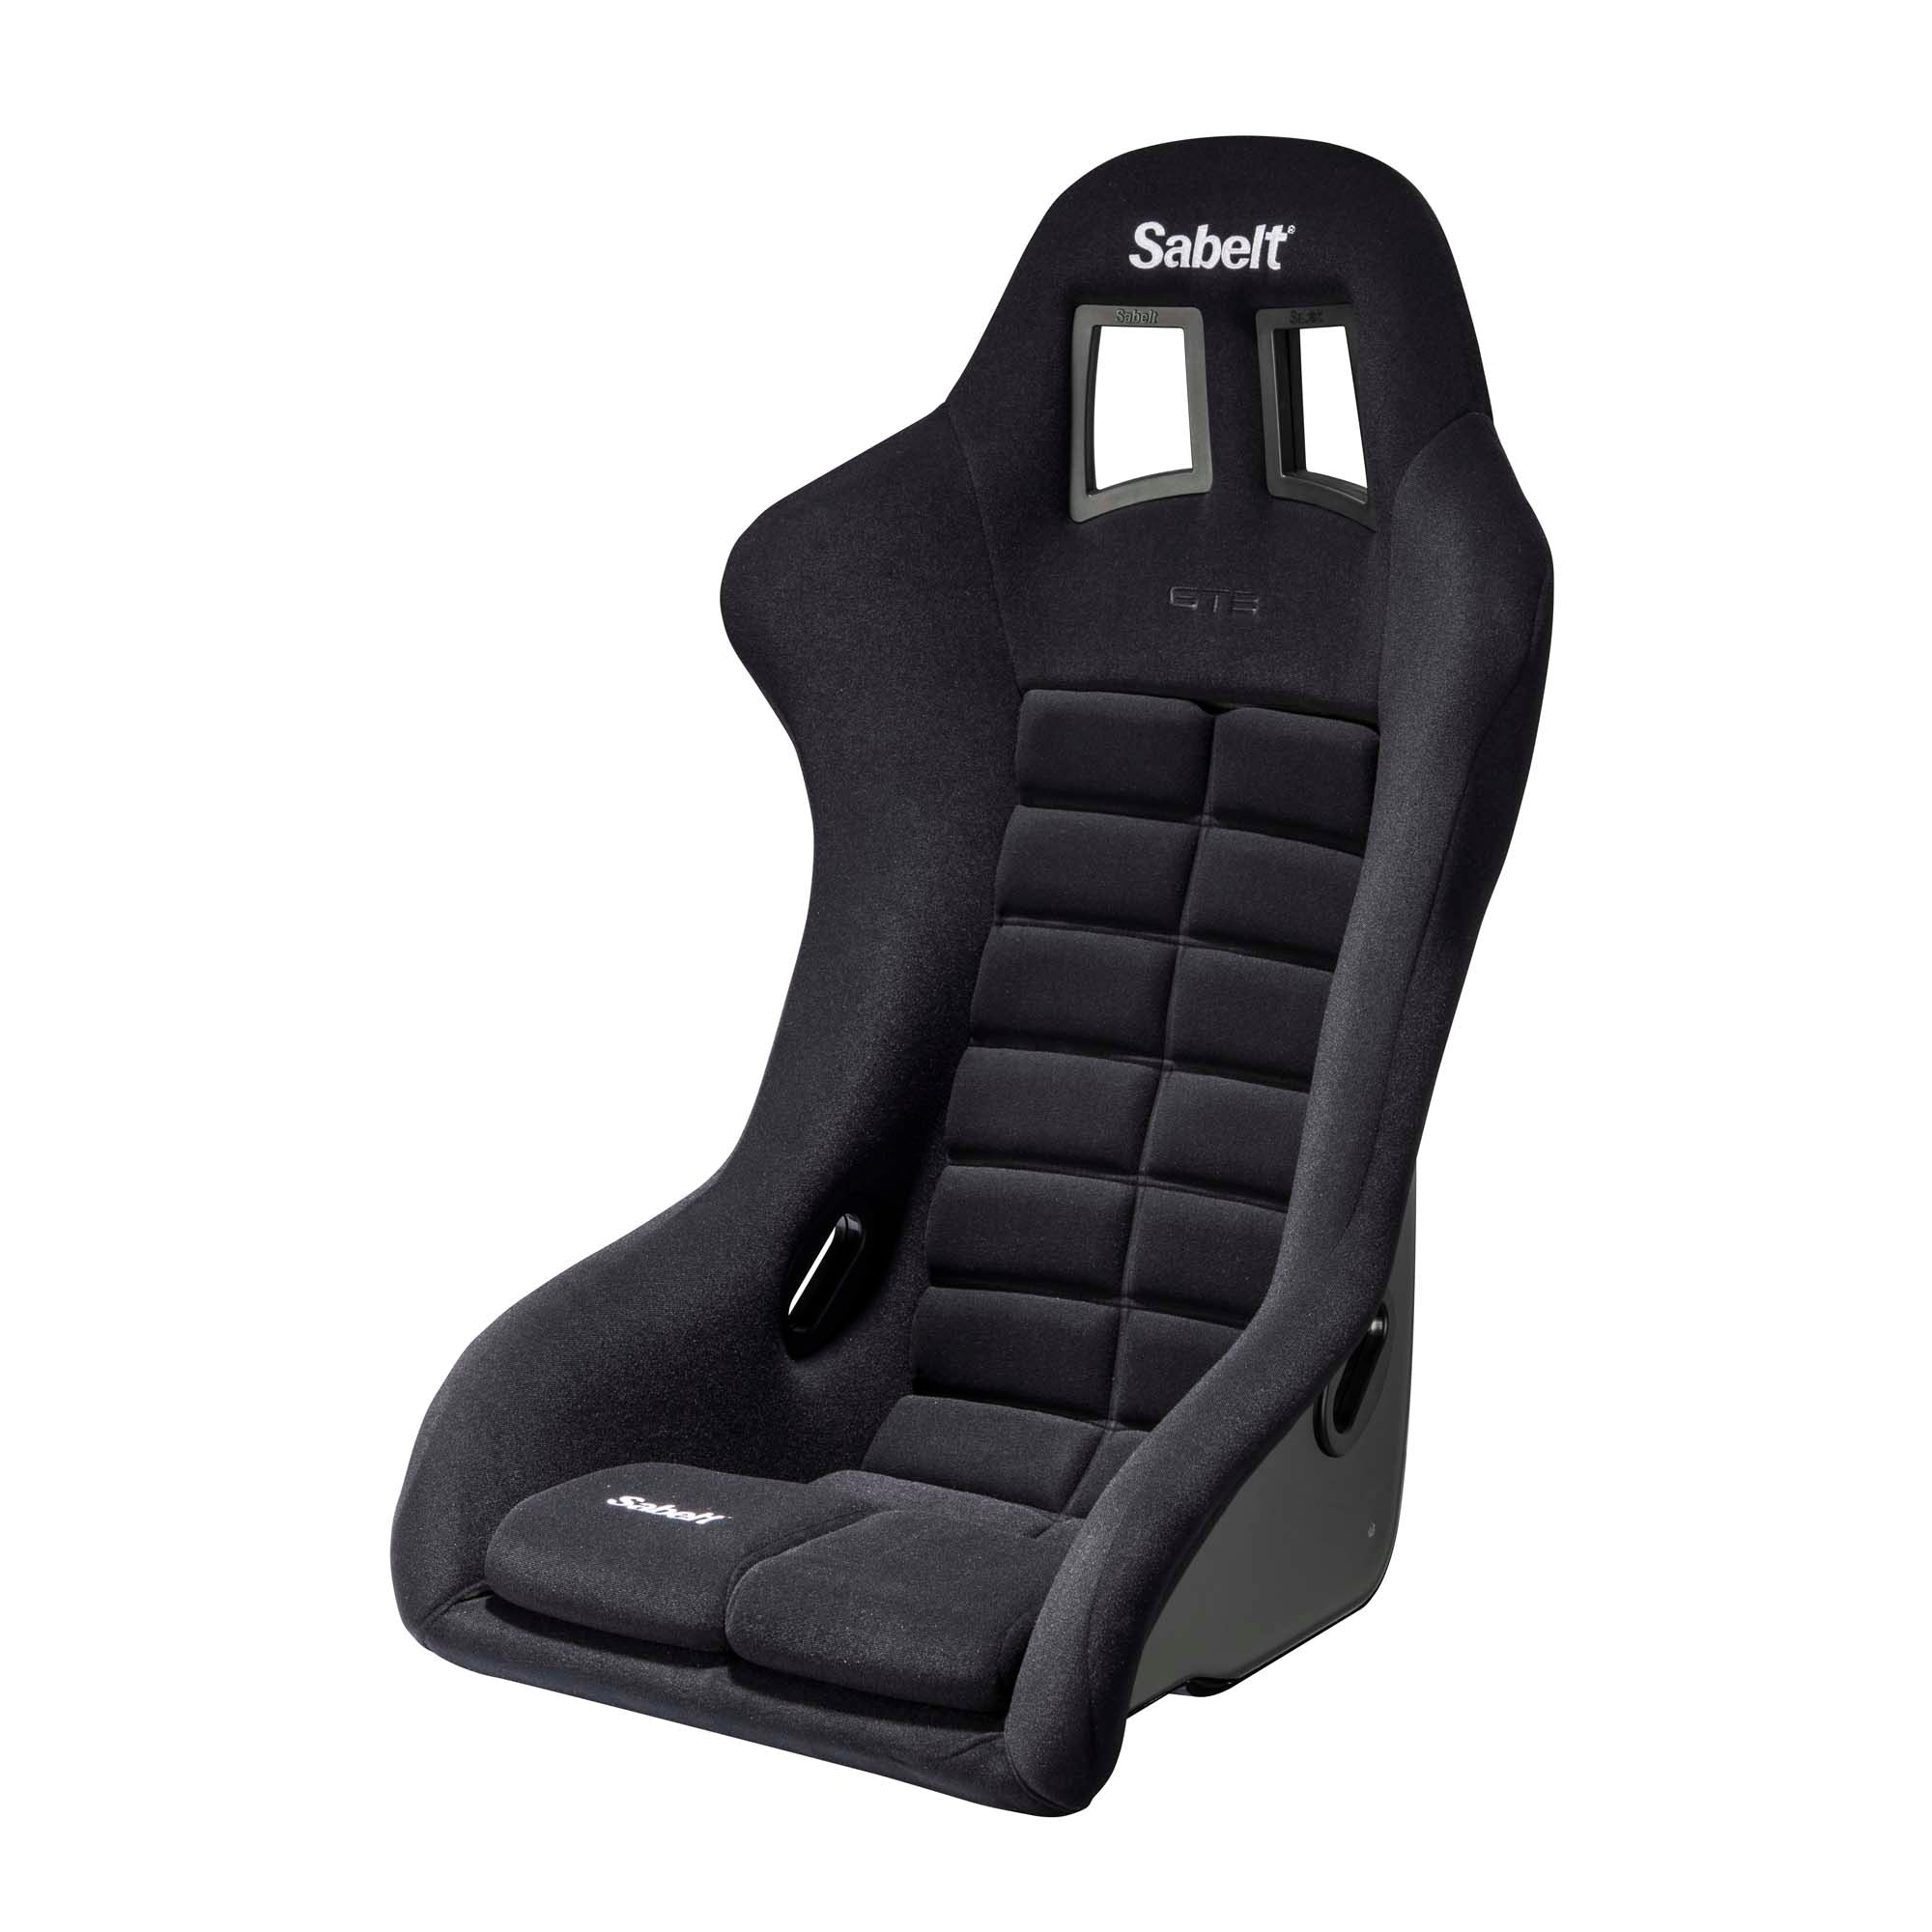 Sabelt GT3 Fiberglass Racing Seat